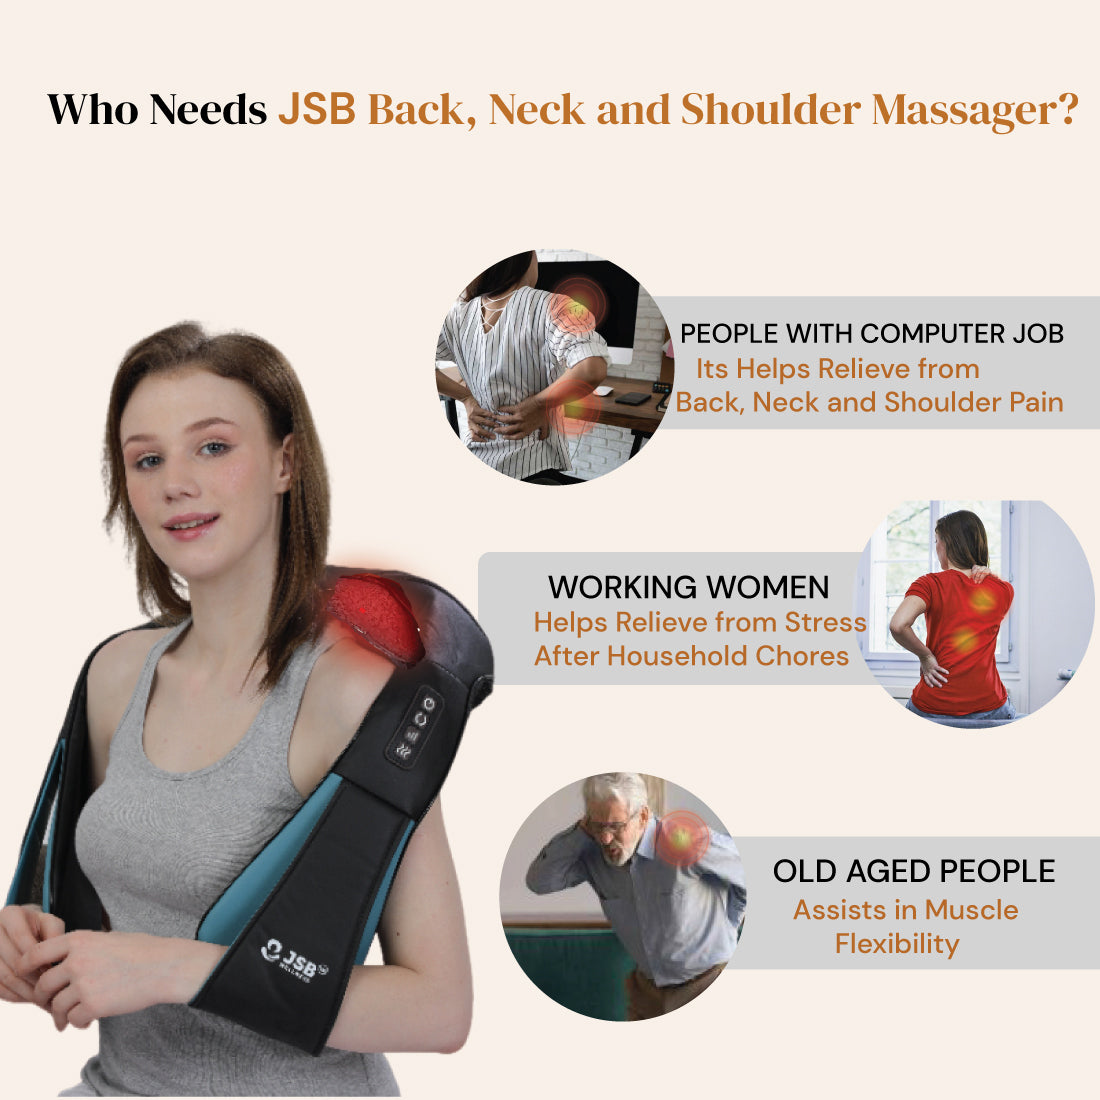 neck and shoulder massager jsb hf71 uses